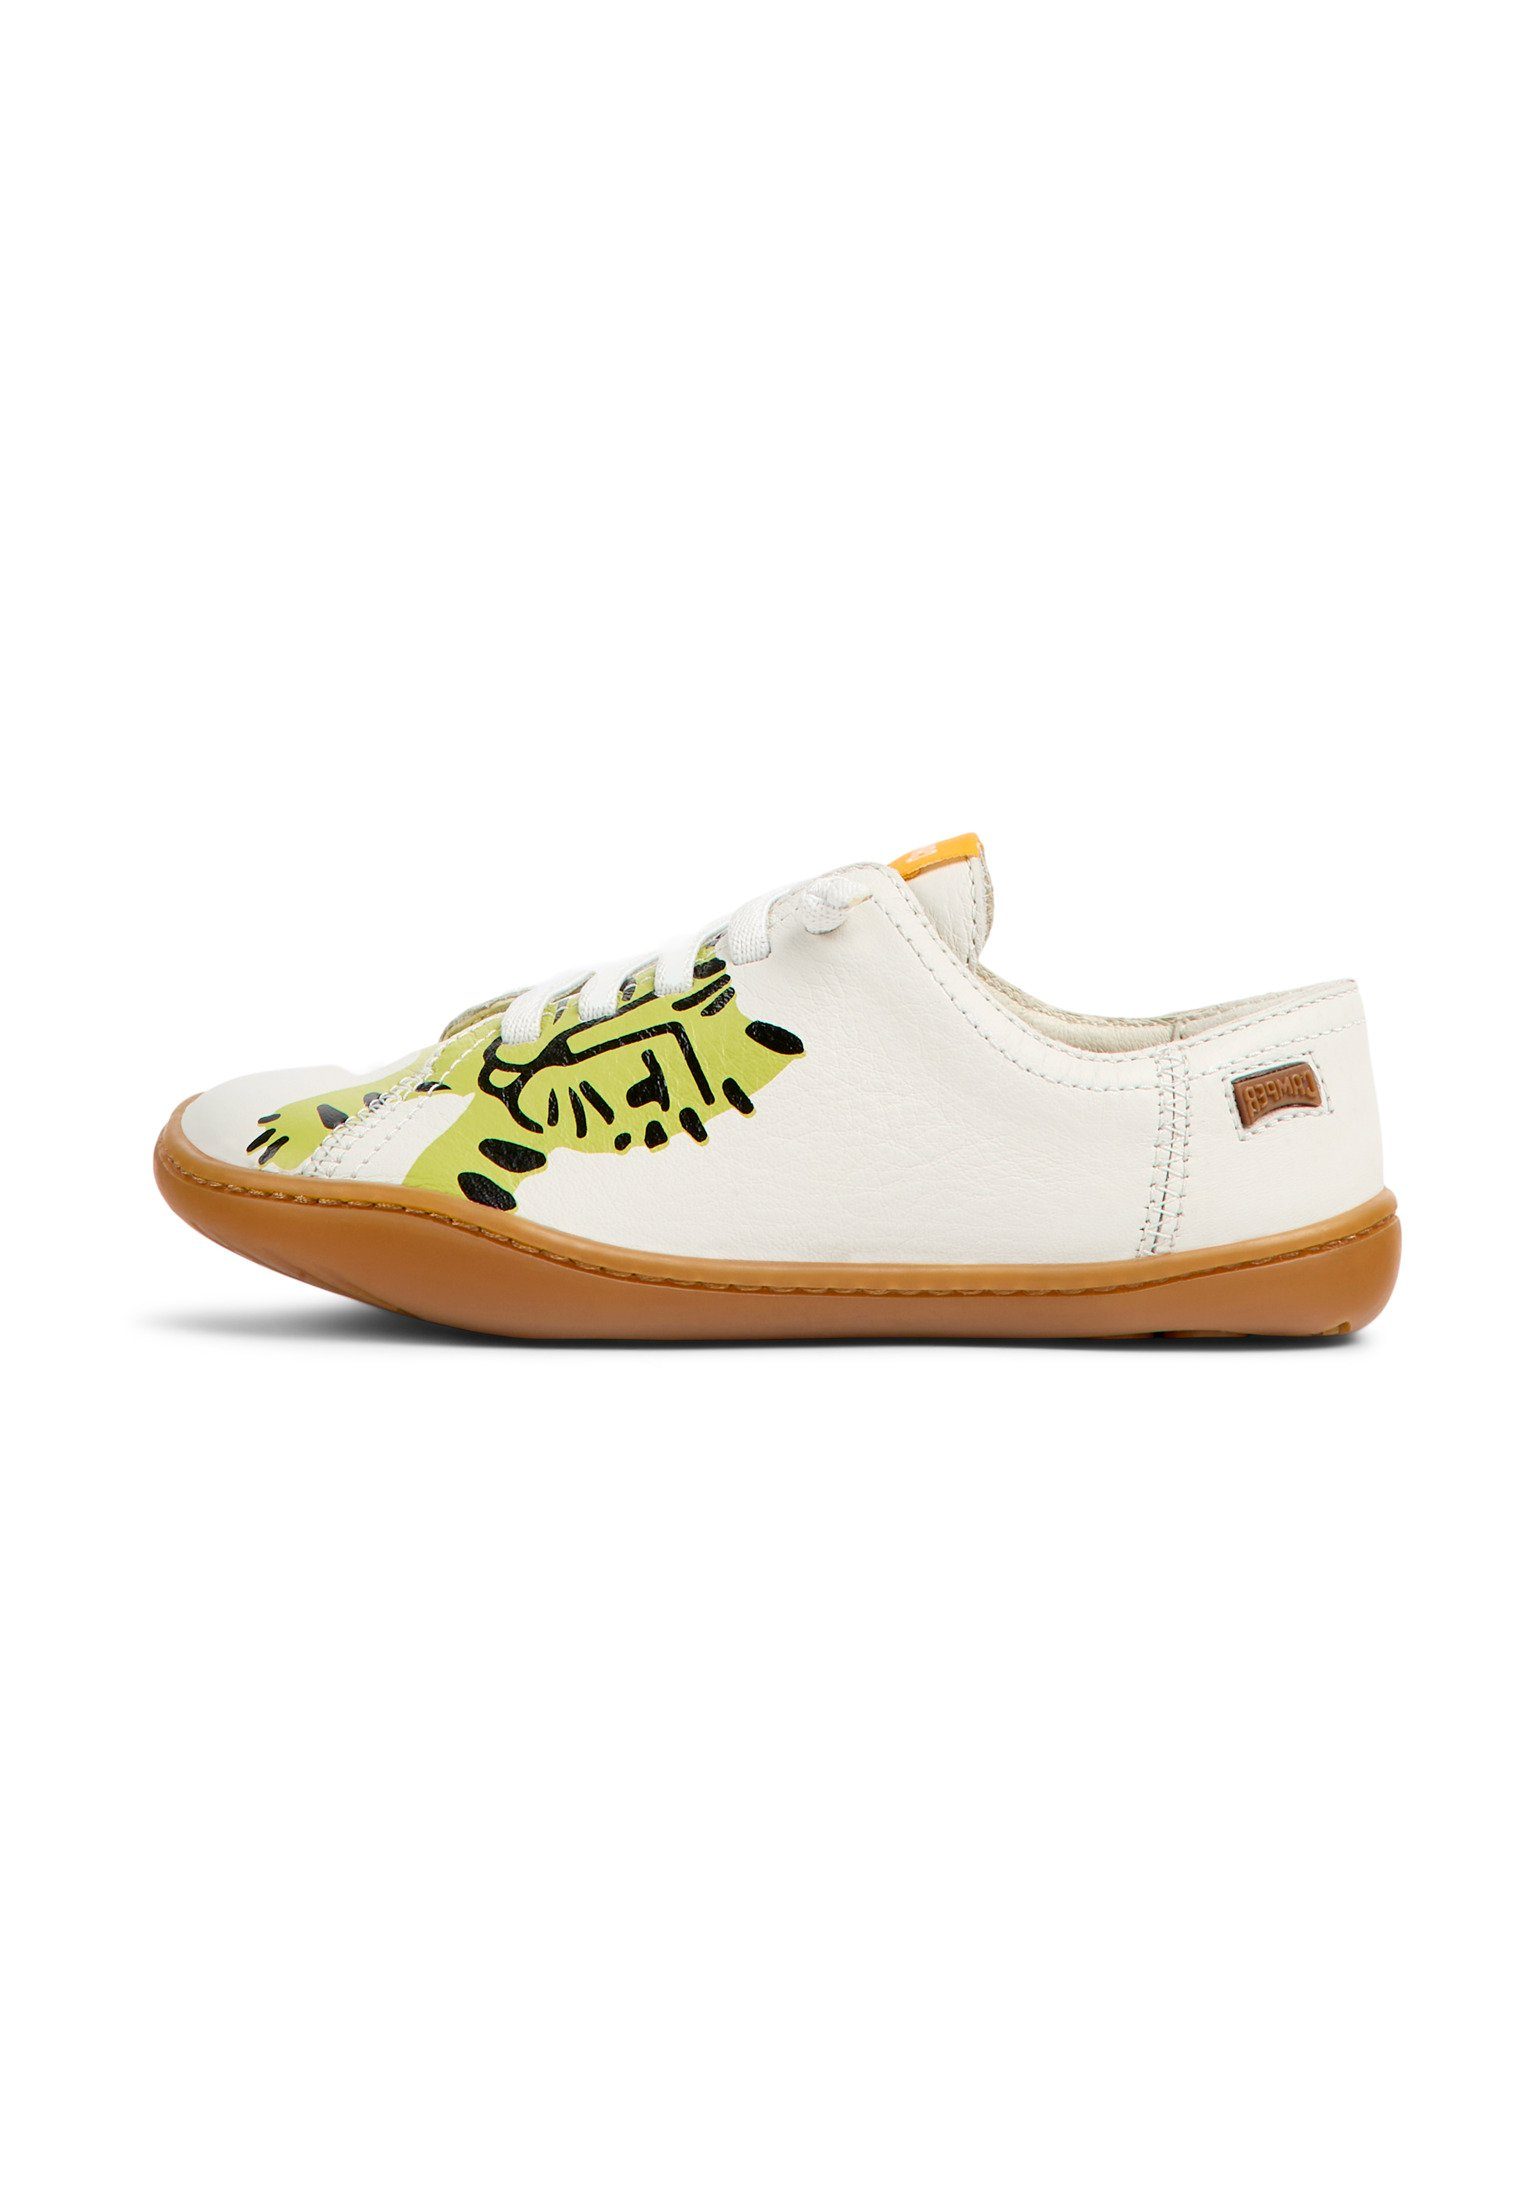 PEU CAMI Weiß Sneaker / Gelb Camper